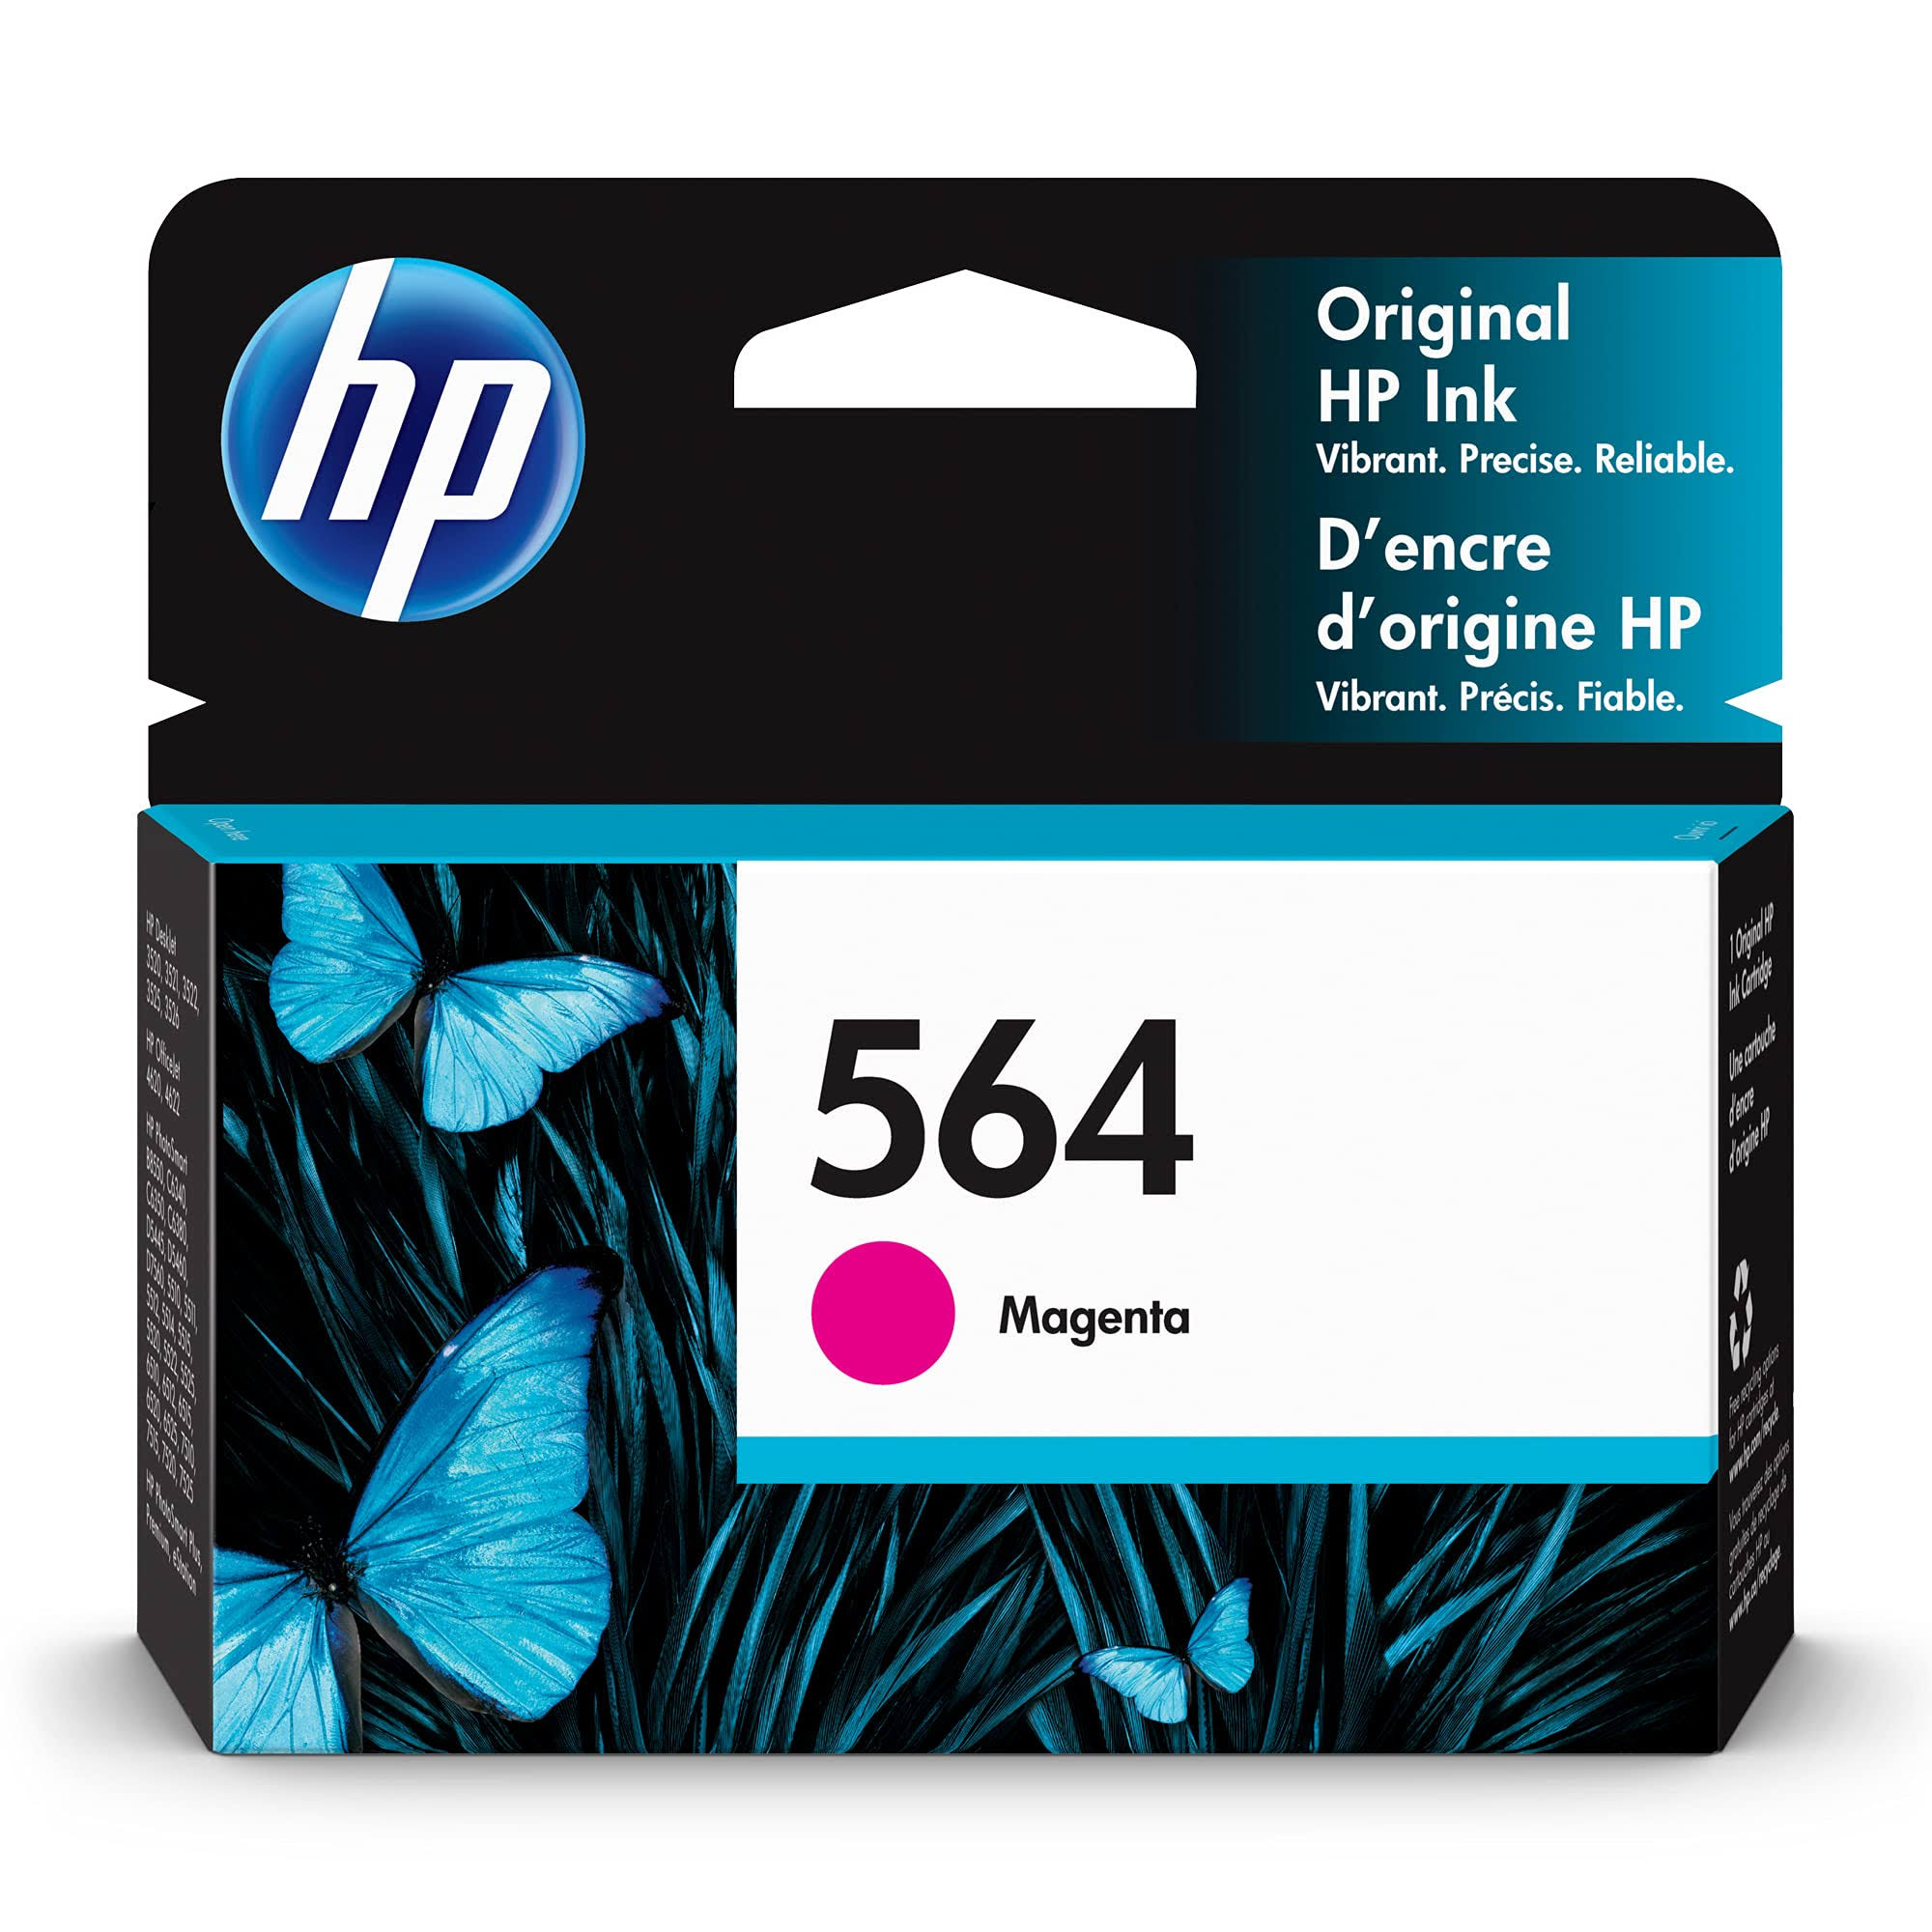 HP 564 Original Ink Cartridge - Magenta